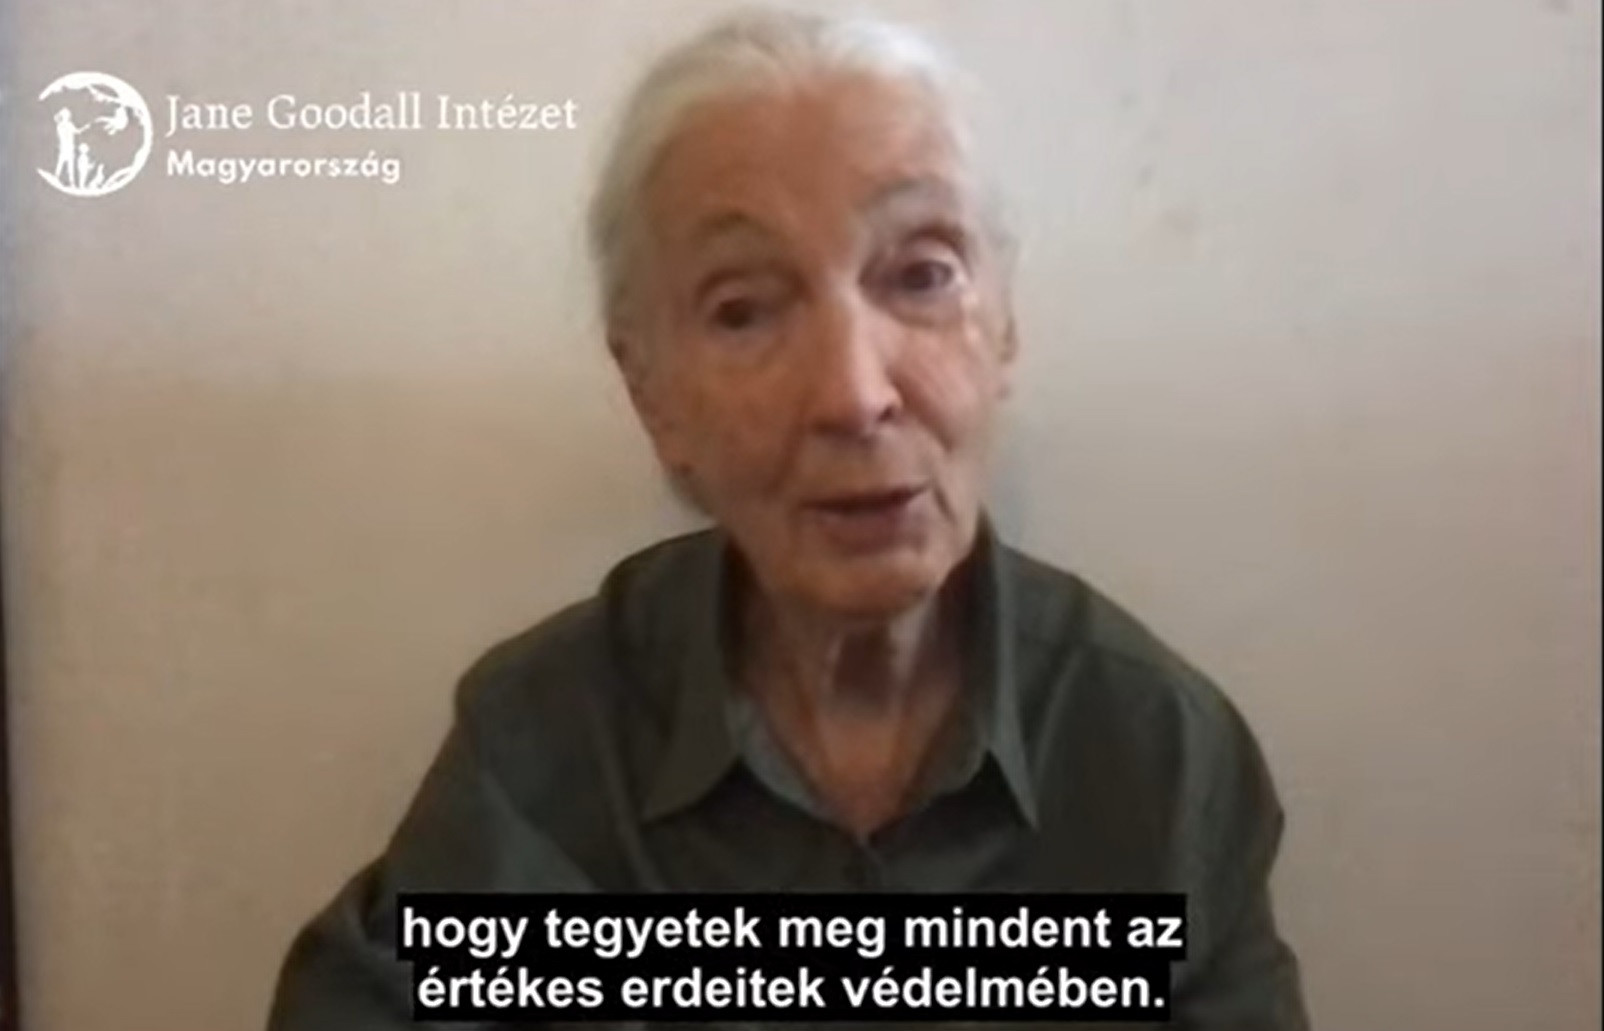 Jane Goodall videón tiltakozik a tűzifarendelet ellen